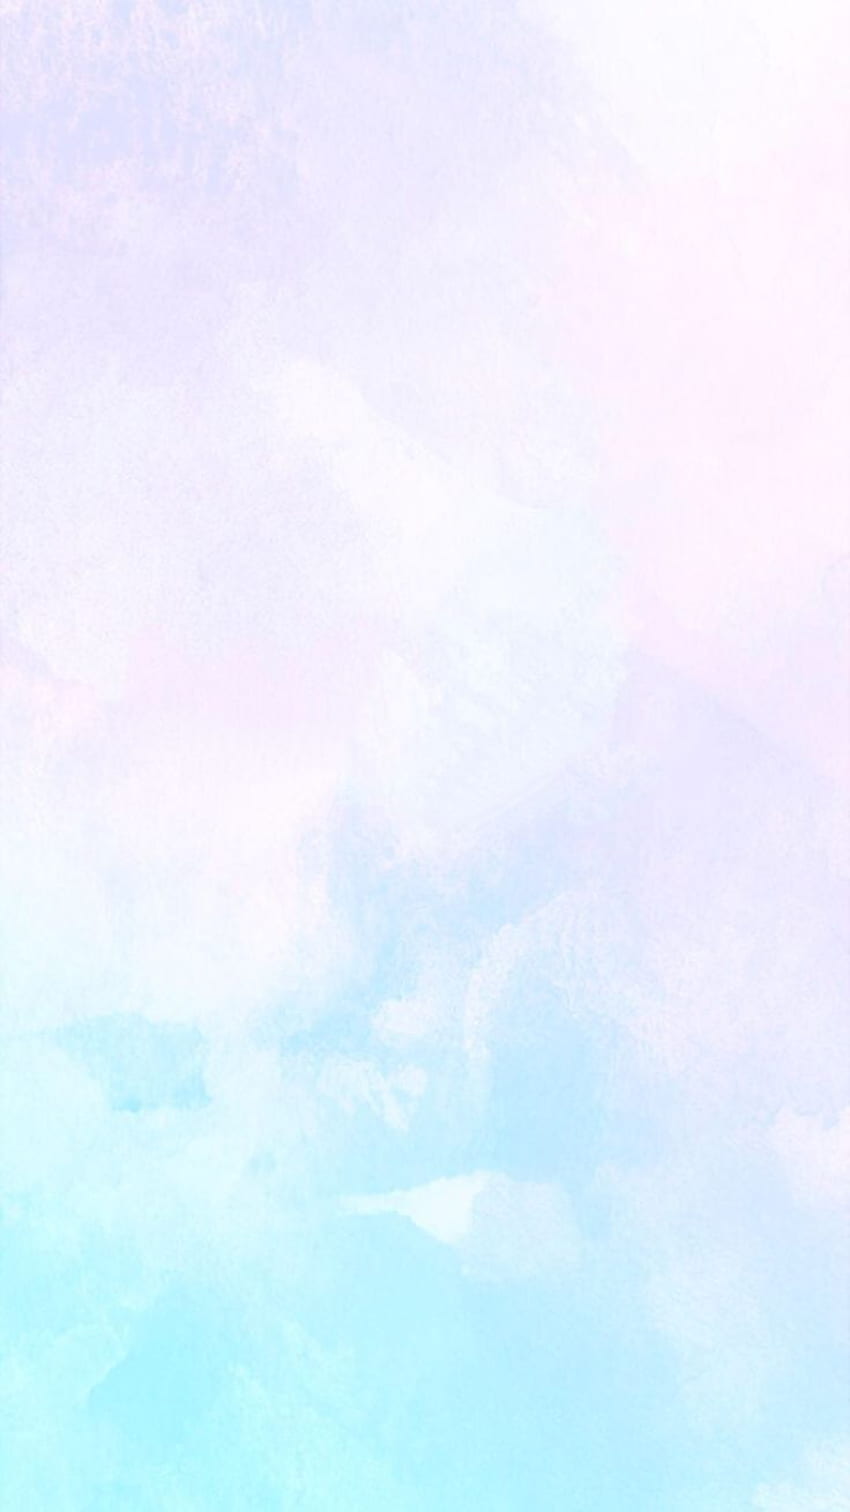 Baby Blue Pastel Plain Background & Wallpaper - SlidesCorner-sgquangbinhtourist.com.vn